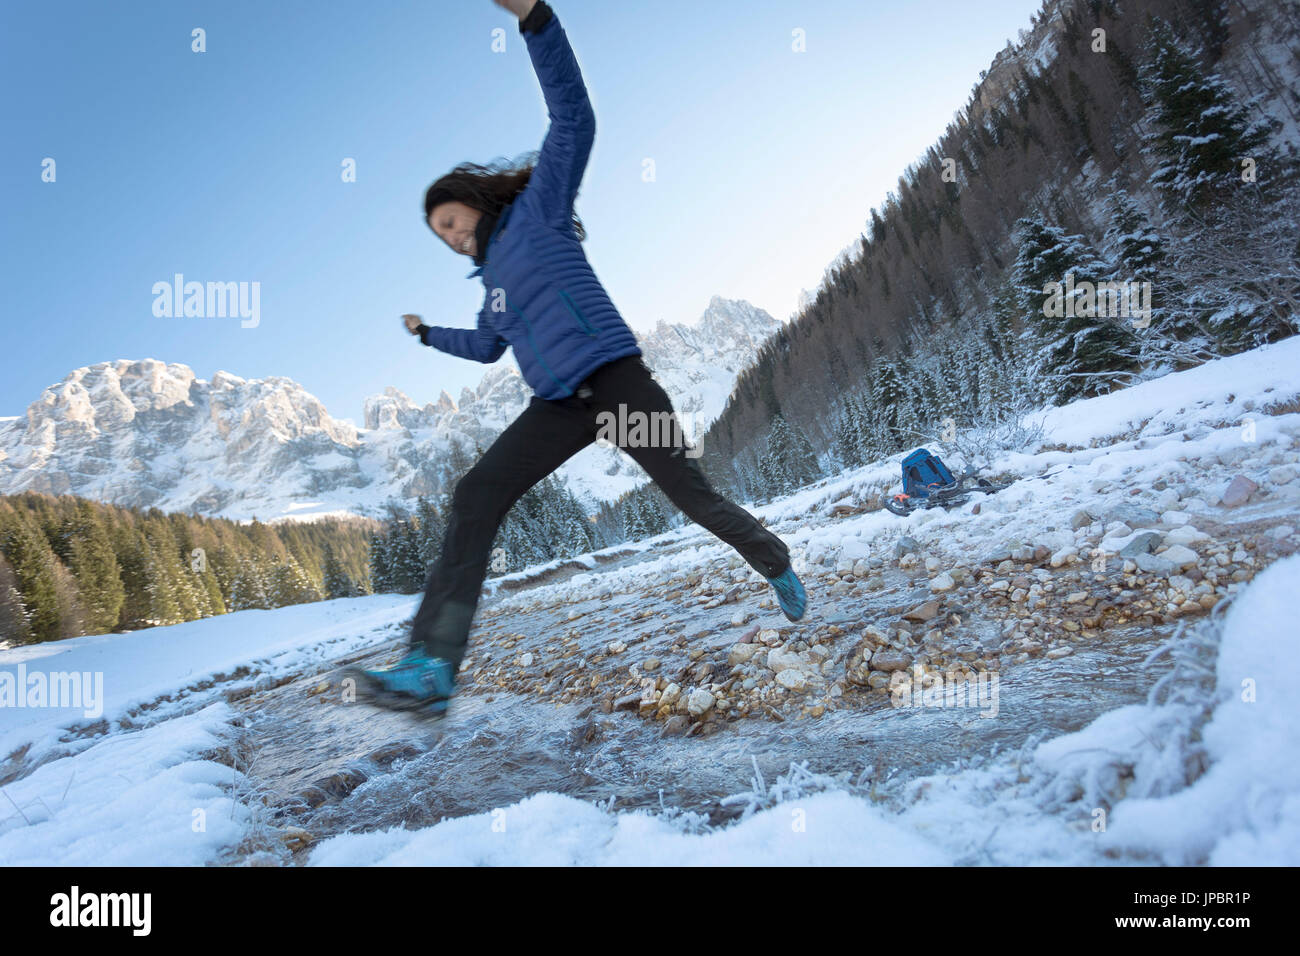 Un gioioso momento durante un trekking invernale mentre il modello salta il creek in Val Venegia, in provincia di Trento, Trentino, Italia, Europa Foto Stock